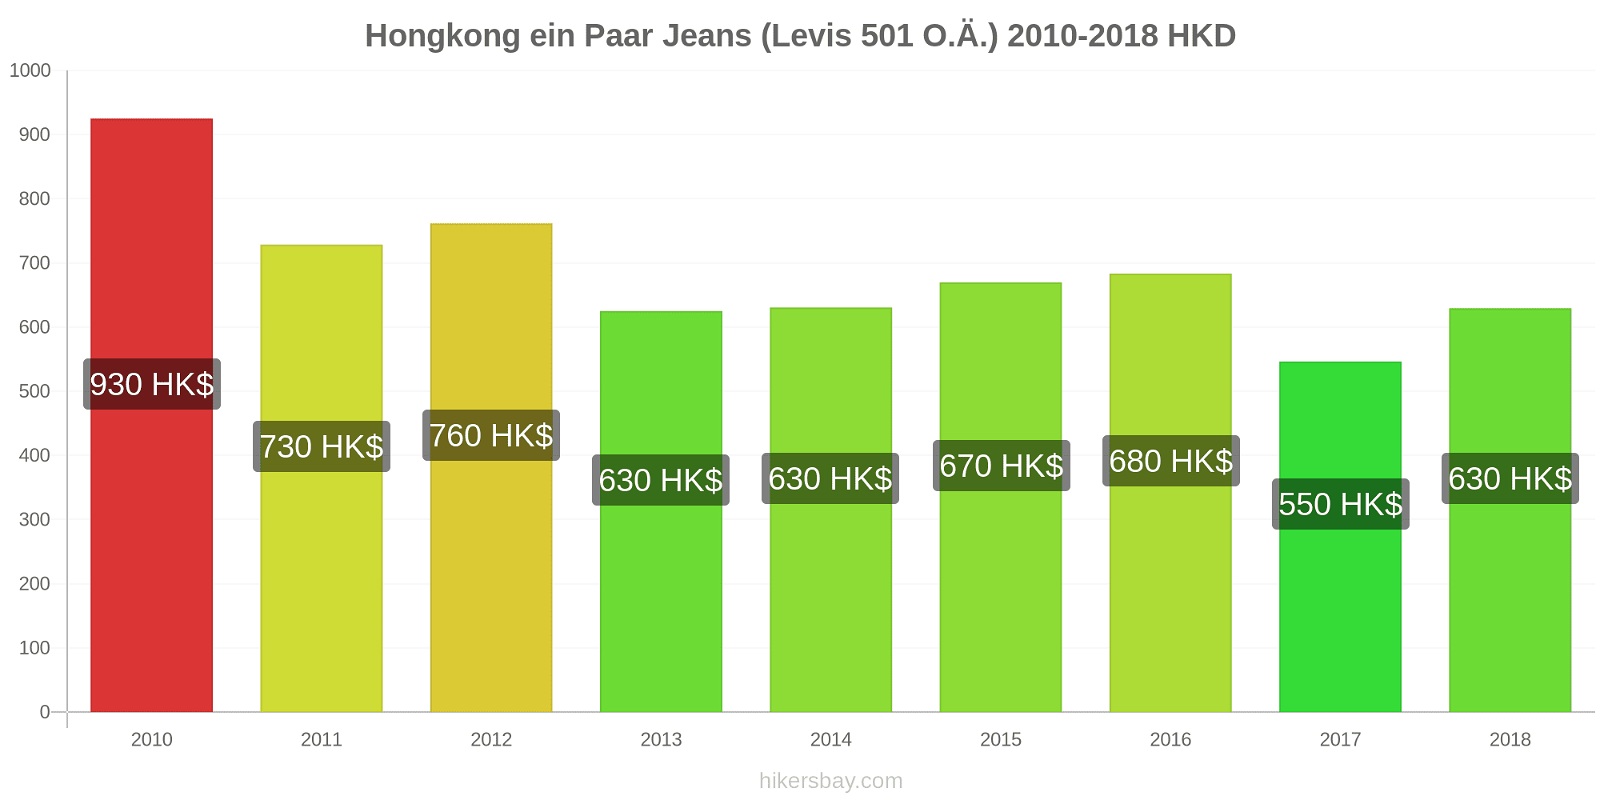 Hongkong Preisänderungen 1 Paar Jeans (Levis 501 oder ähnliche) hikersbay.com